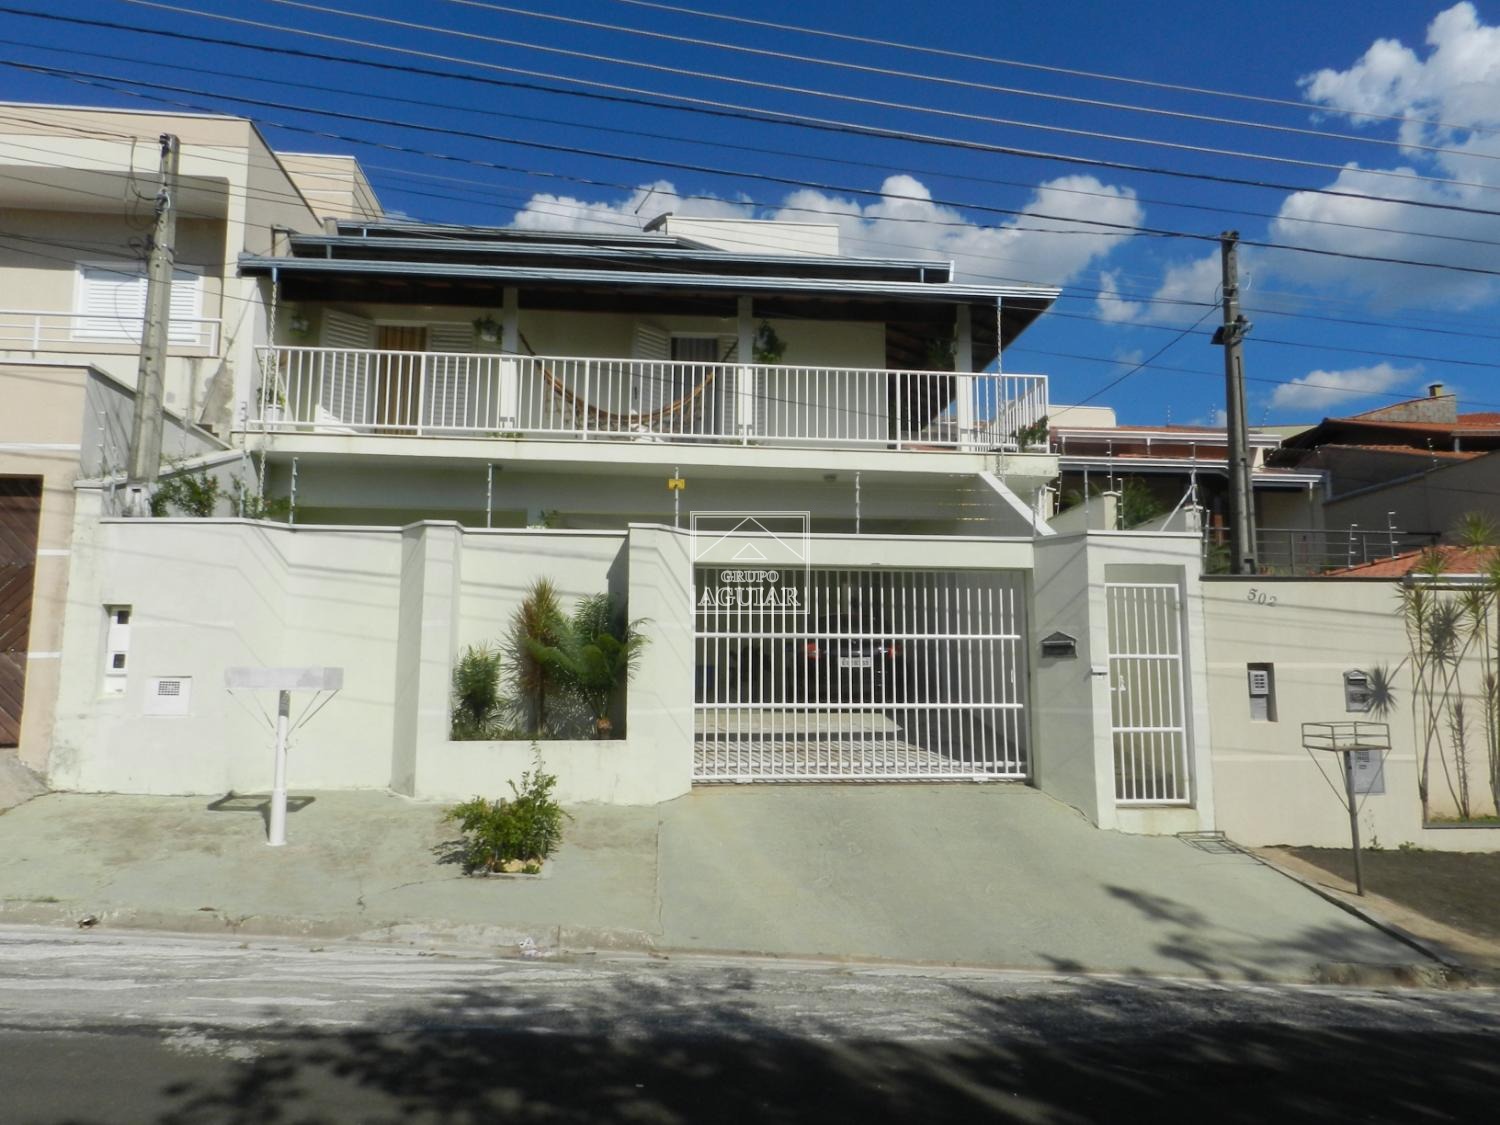 CA001074 | Casa venda Loteamento Nova Espírito Santo | Valinhos/SP